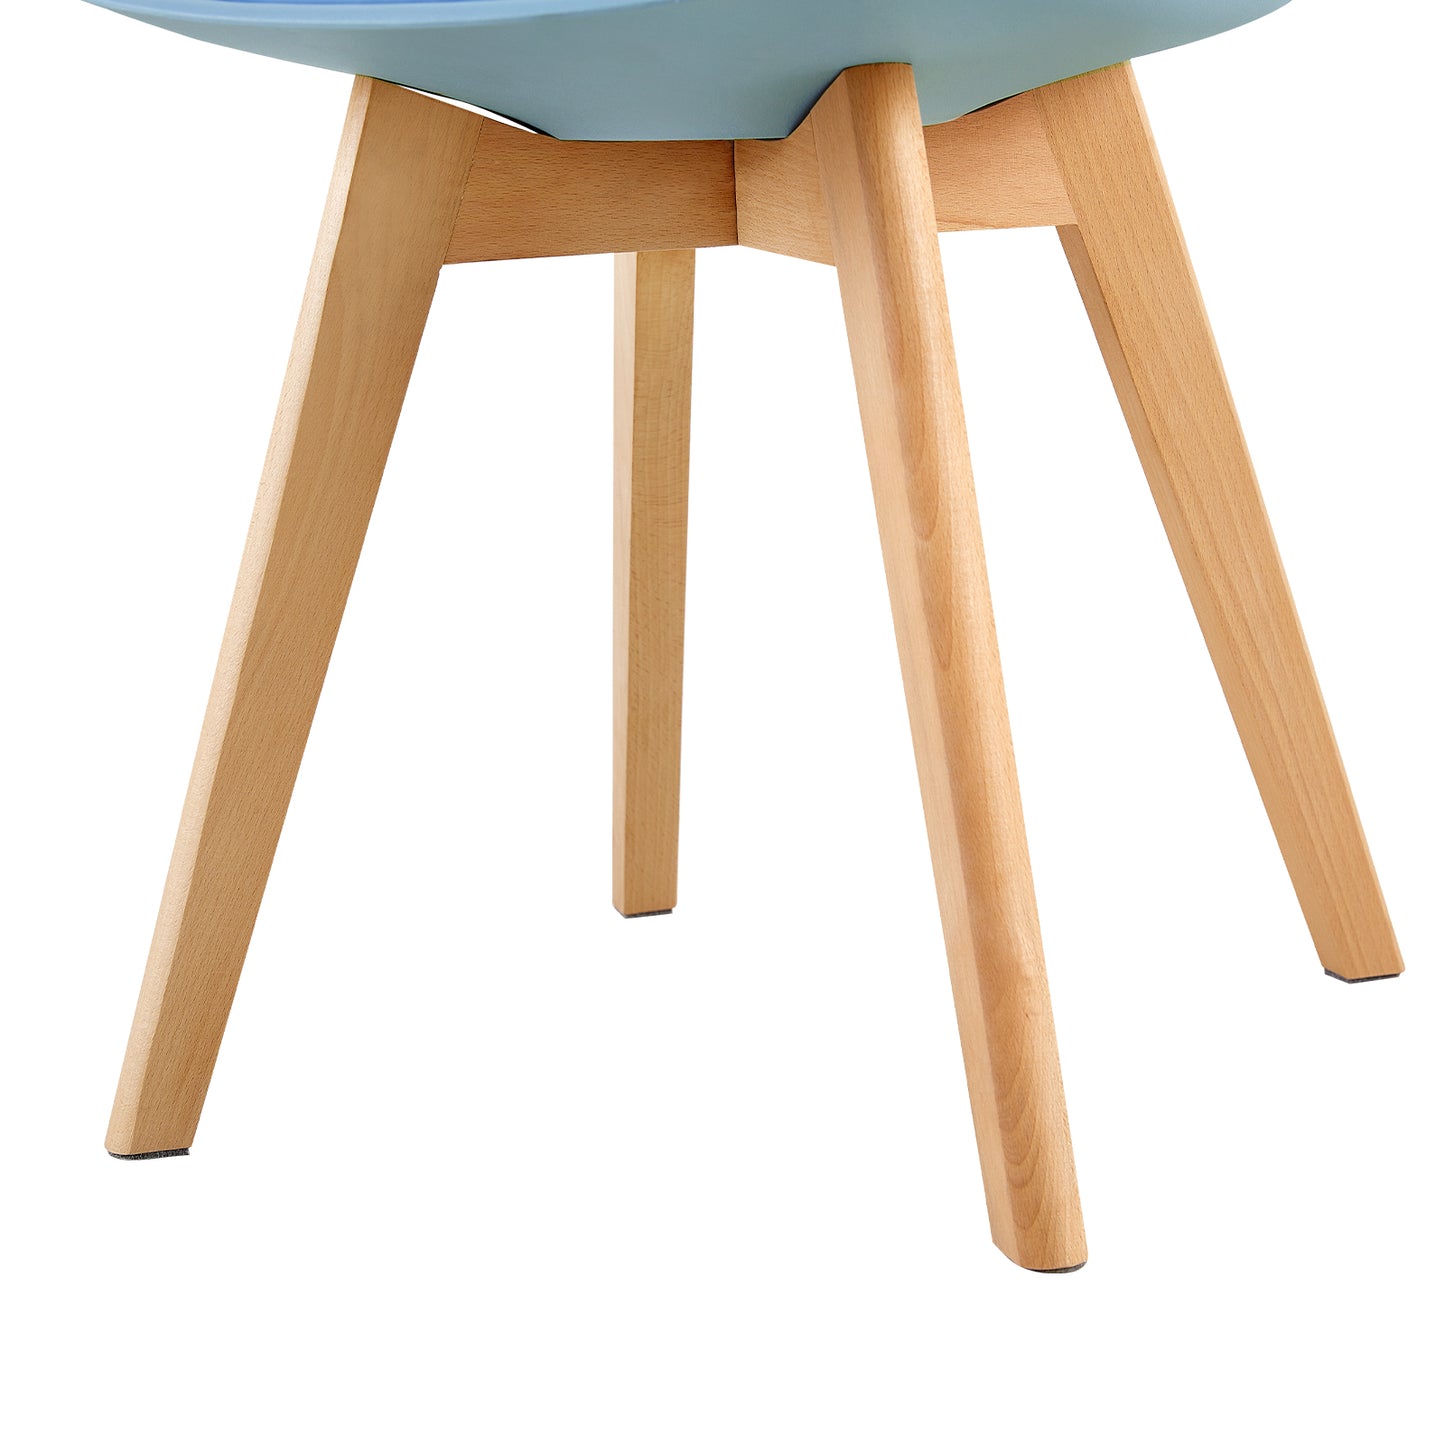 1 Chaise Design Plastique Scandinave Chaise de Salle à manger - Bleu